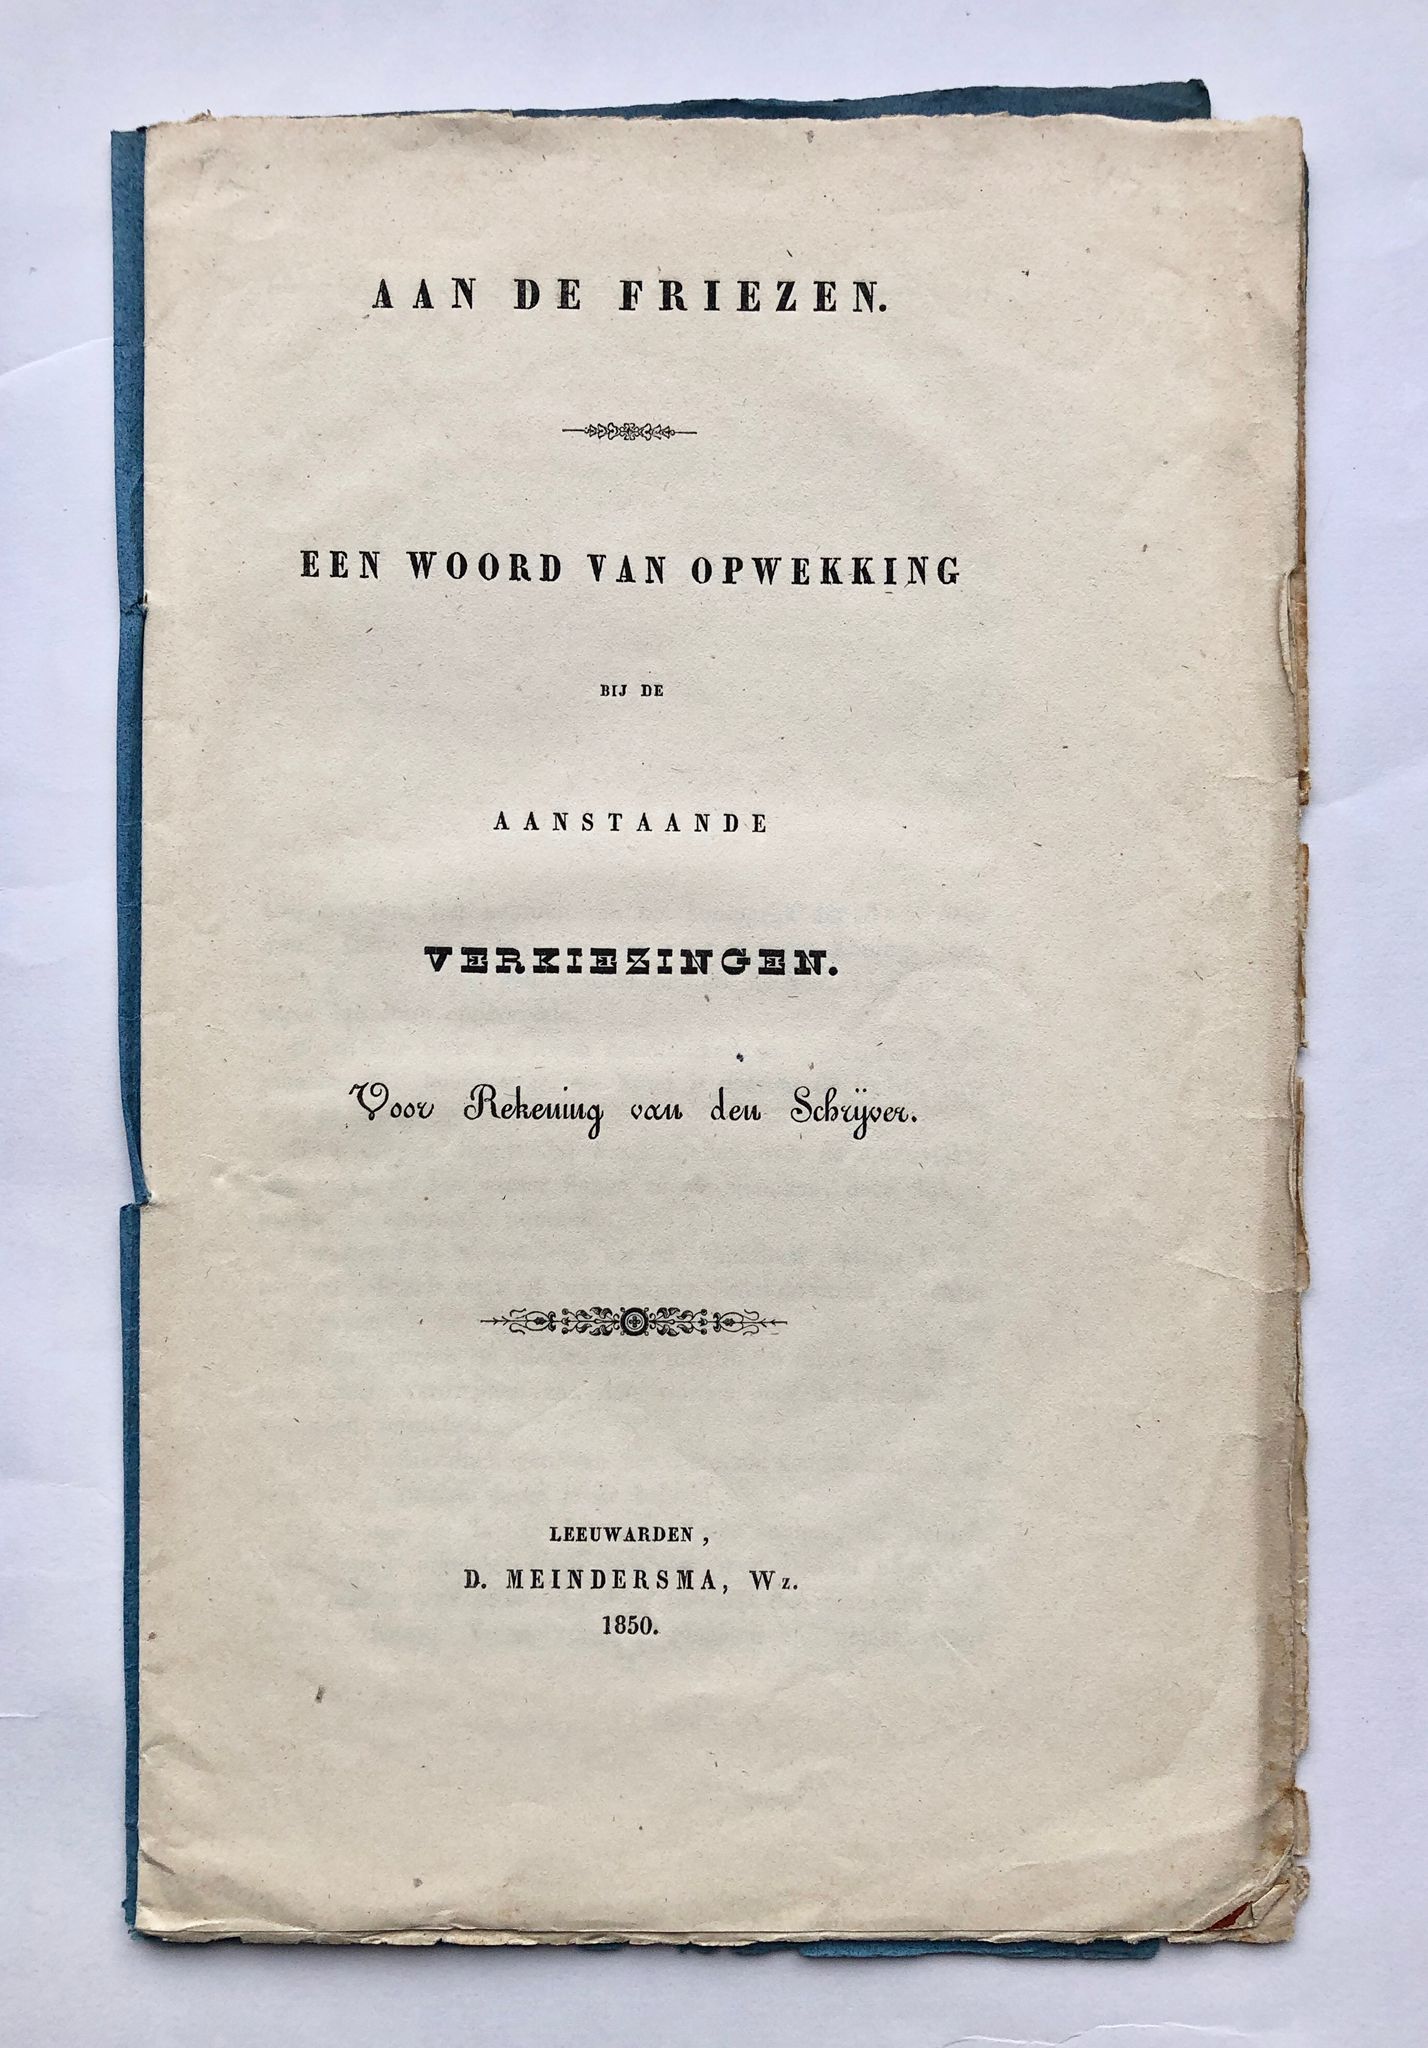 [Friesland, Leeuwarden, 1850] Aan de Friezen. Een woord van opwekking bij de aanstaande verkiezingen, D. Meindersma, Wz. Leeuwarden, 1850, 16 pp.